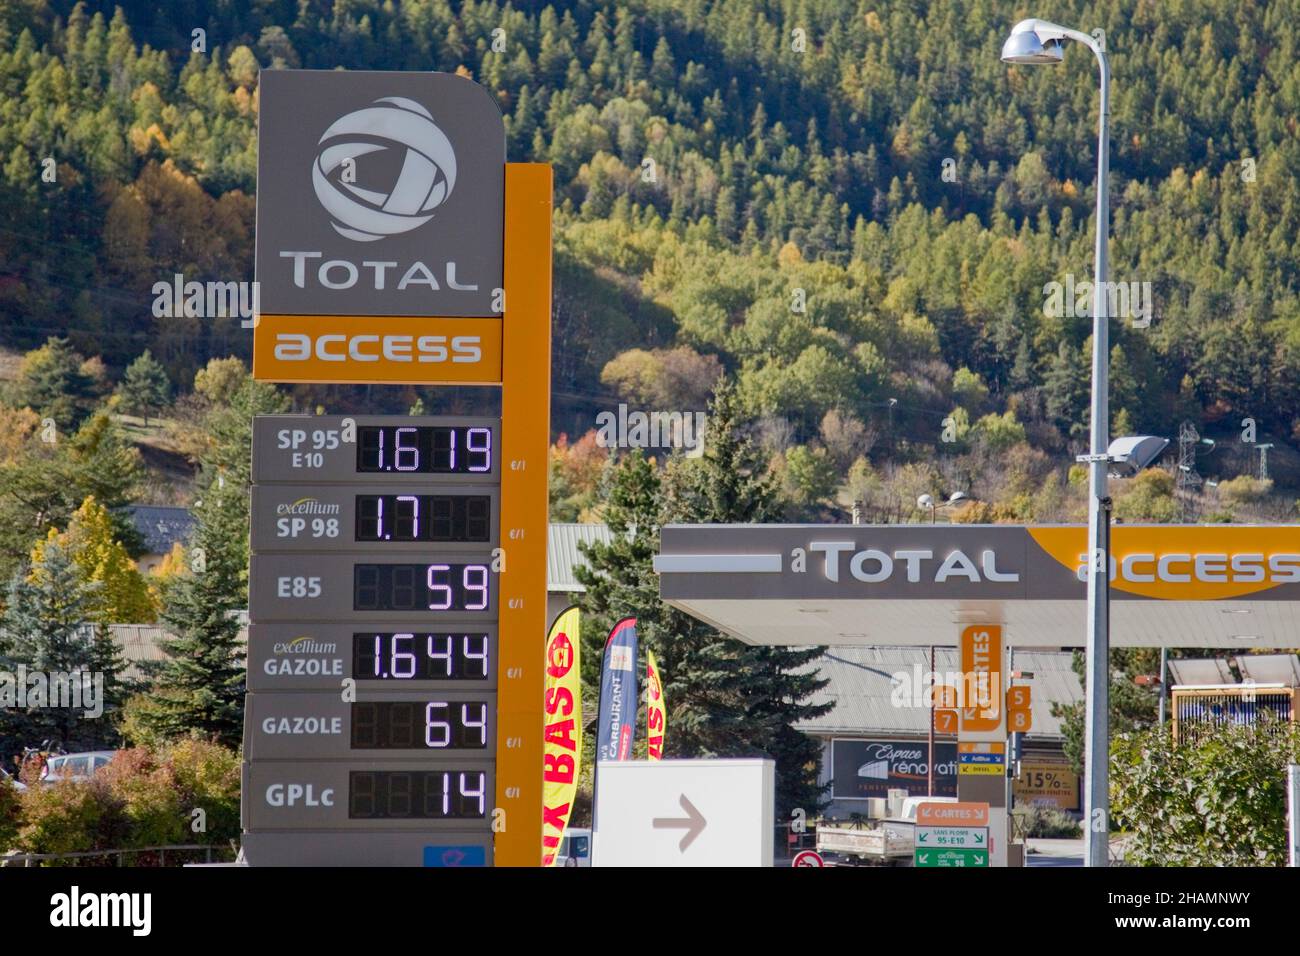 Prezzi delle pompe presso un distributore di benzina "Total Access" il 21 ottobre 2021. Illustrazione dell'aumento dei prezzi delle pompe Foto Stock